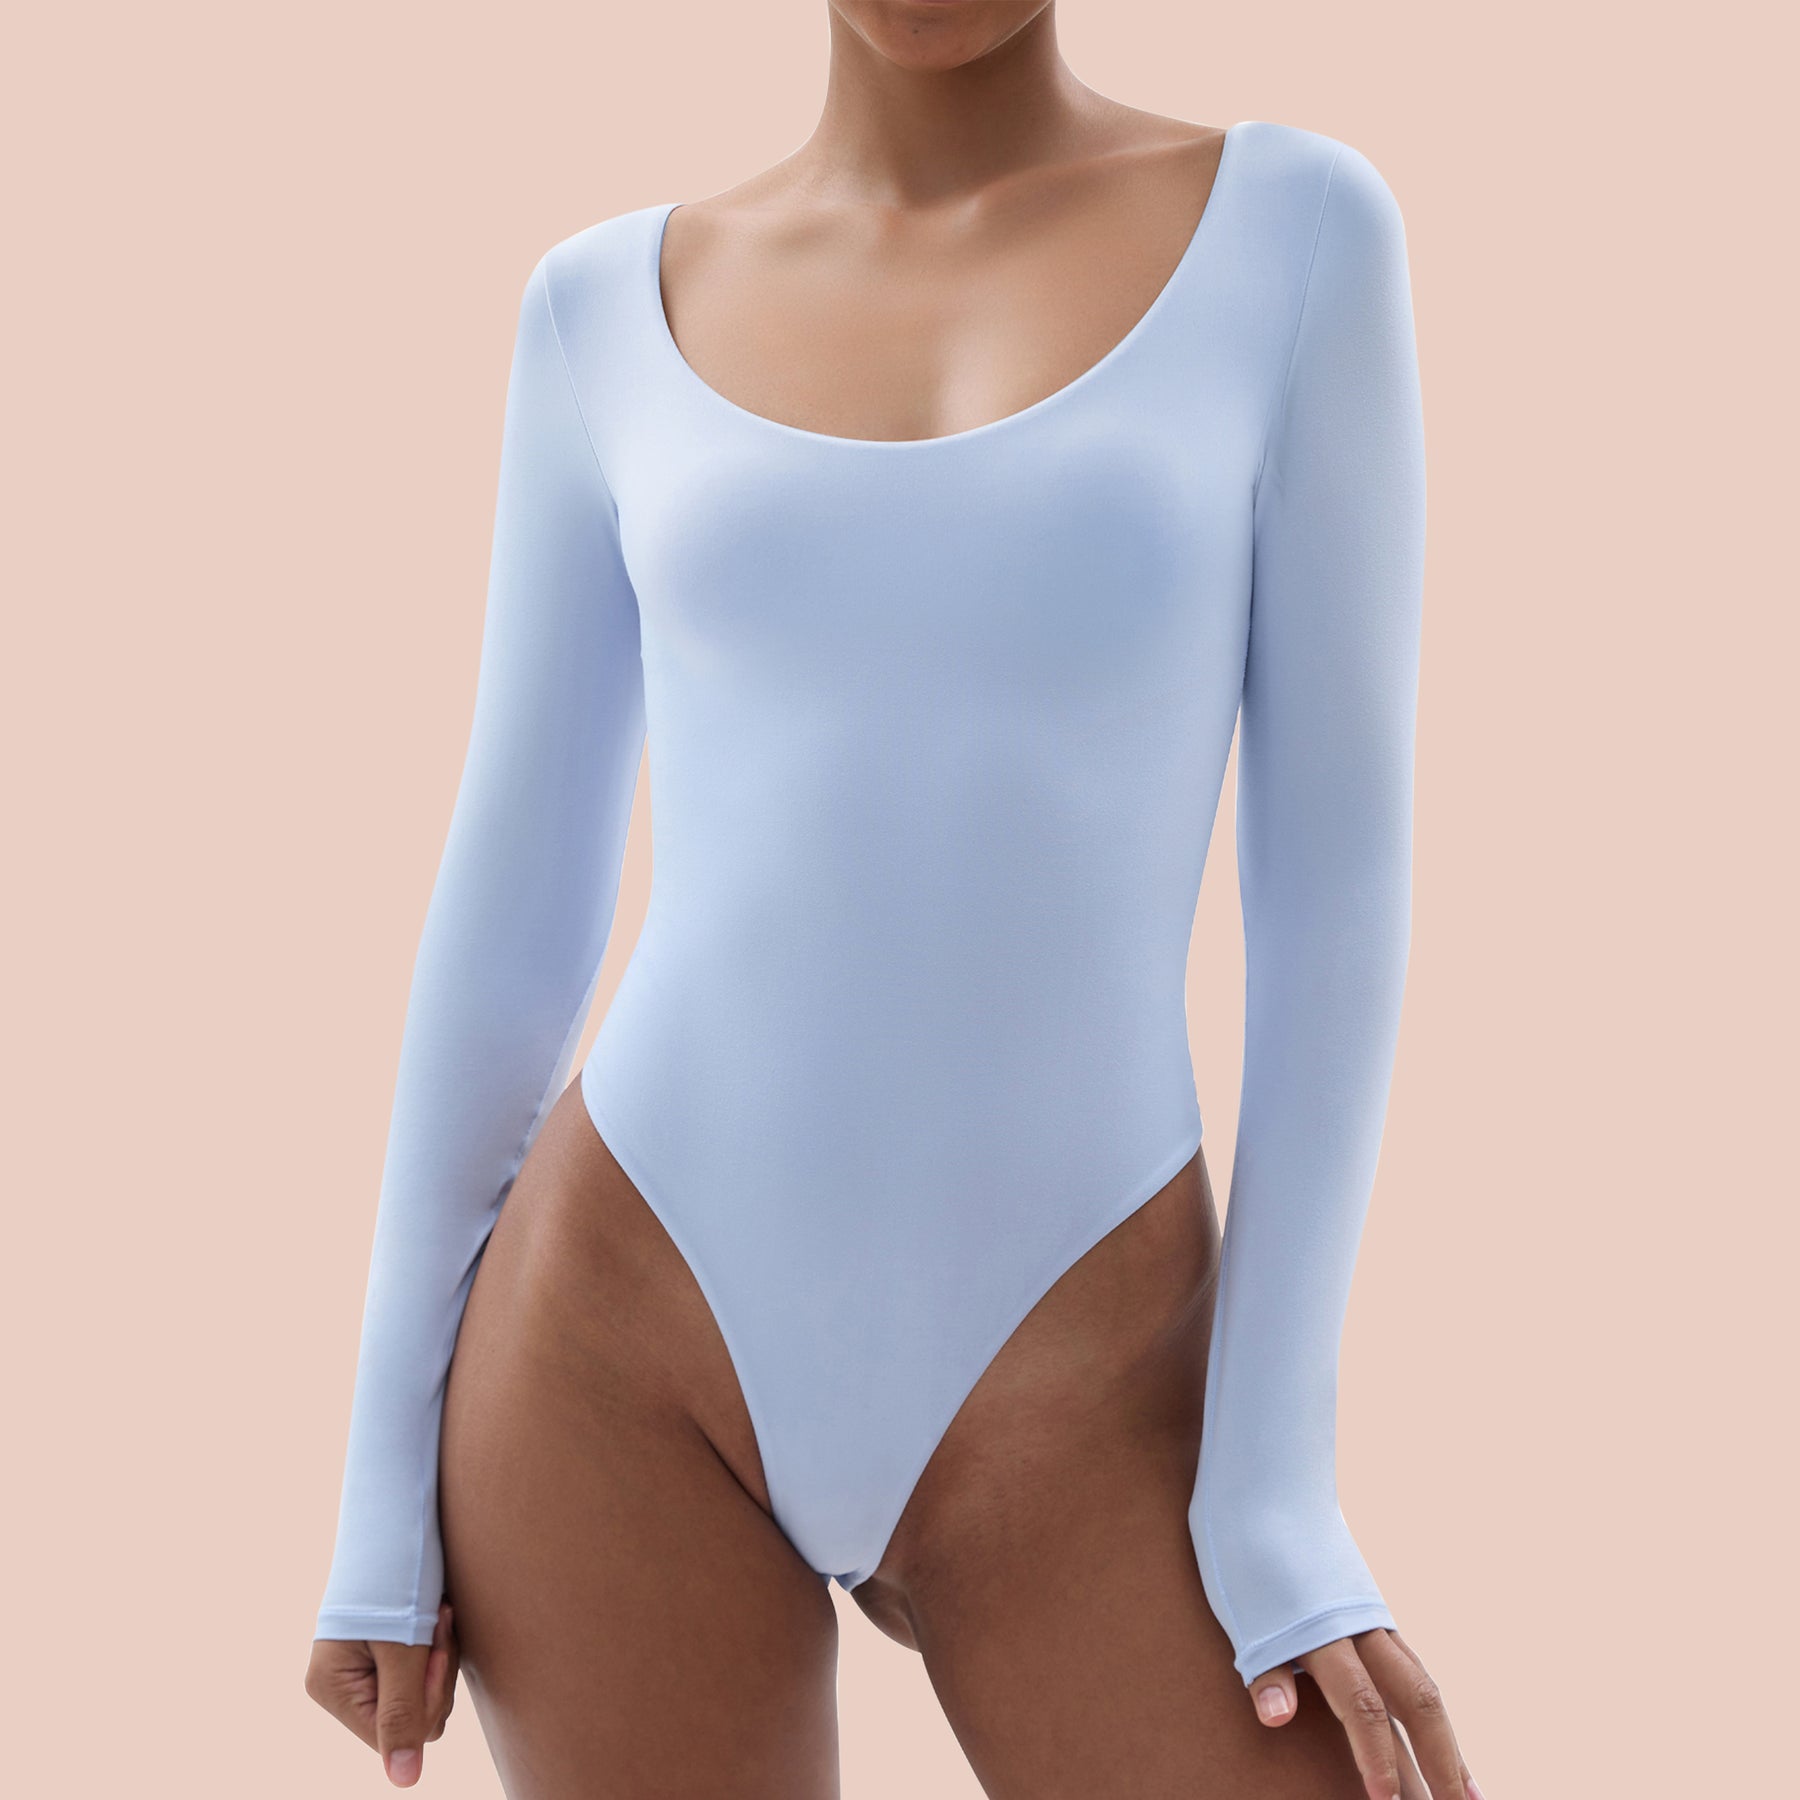 Imperial Shop Online Long-sleeved scoop-neck bodysuit Official website